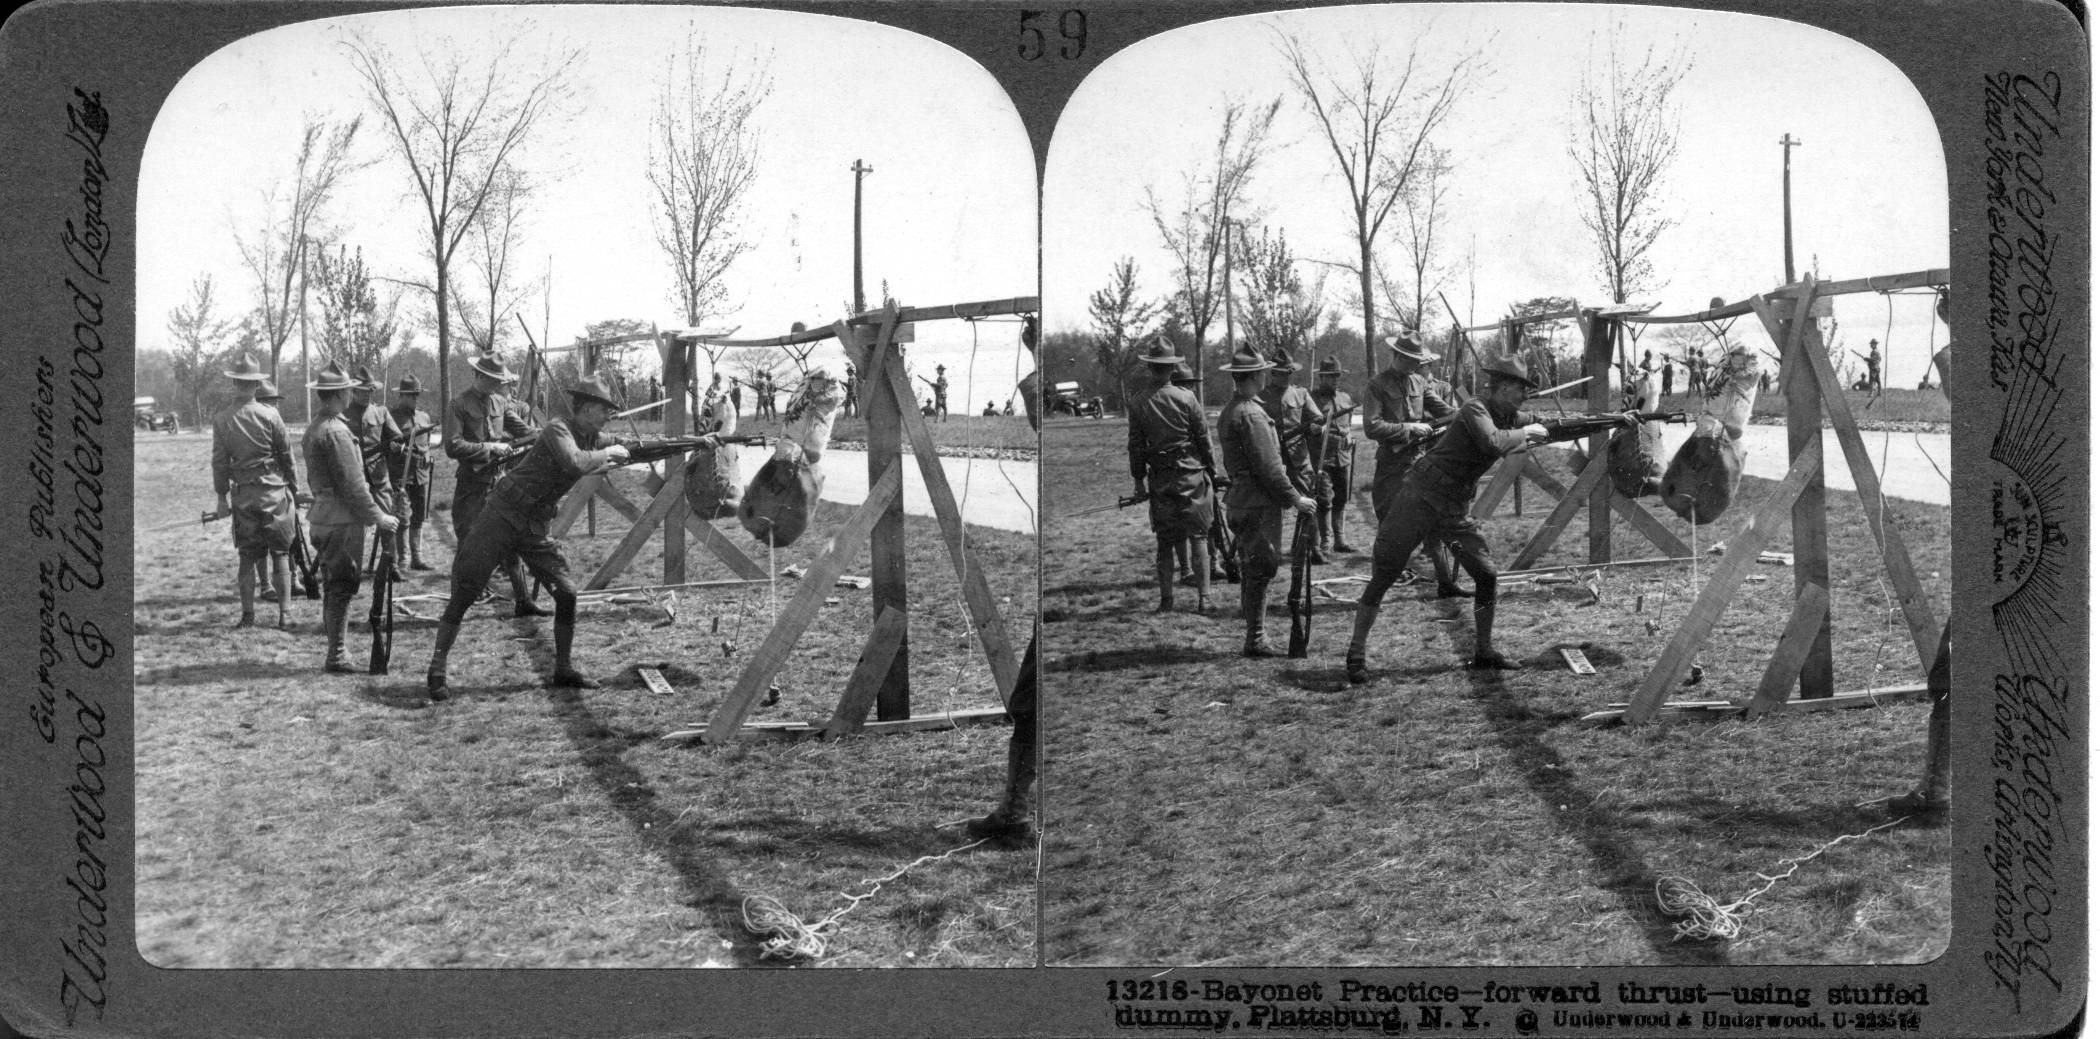 Bayonet practice--forward thrust--using stuffed dummy, Plattsburg, N.Y.